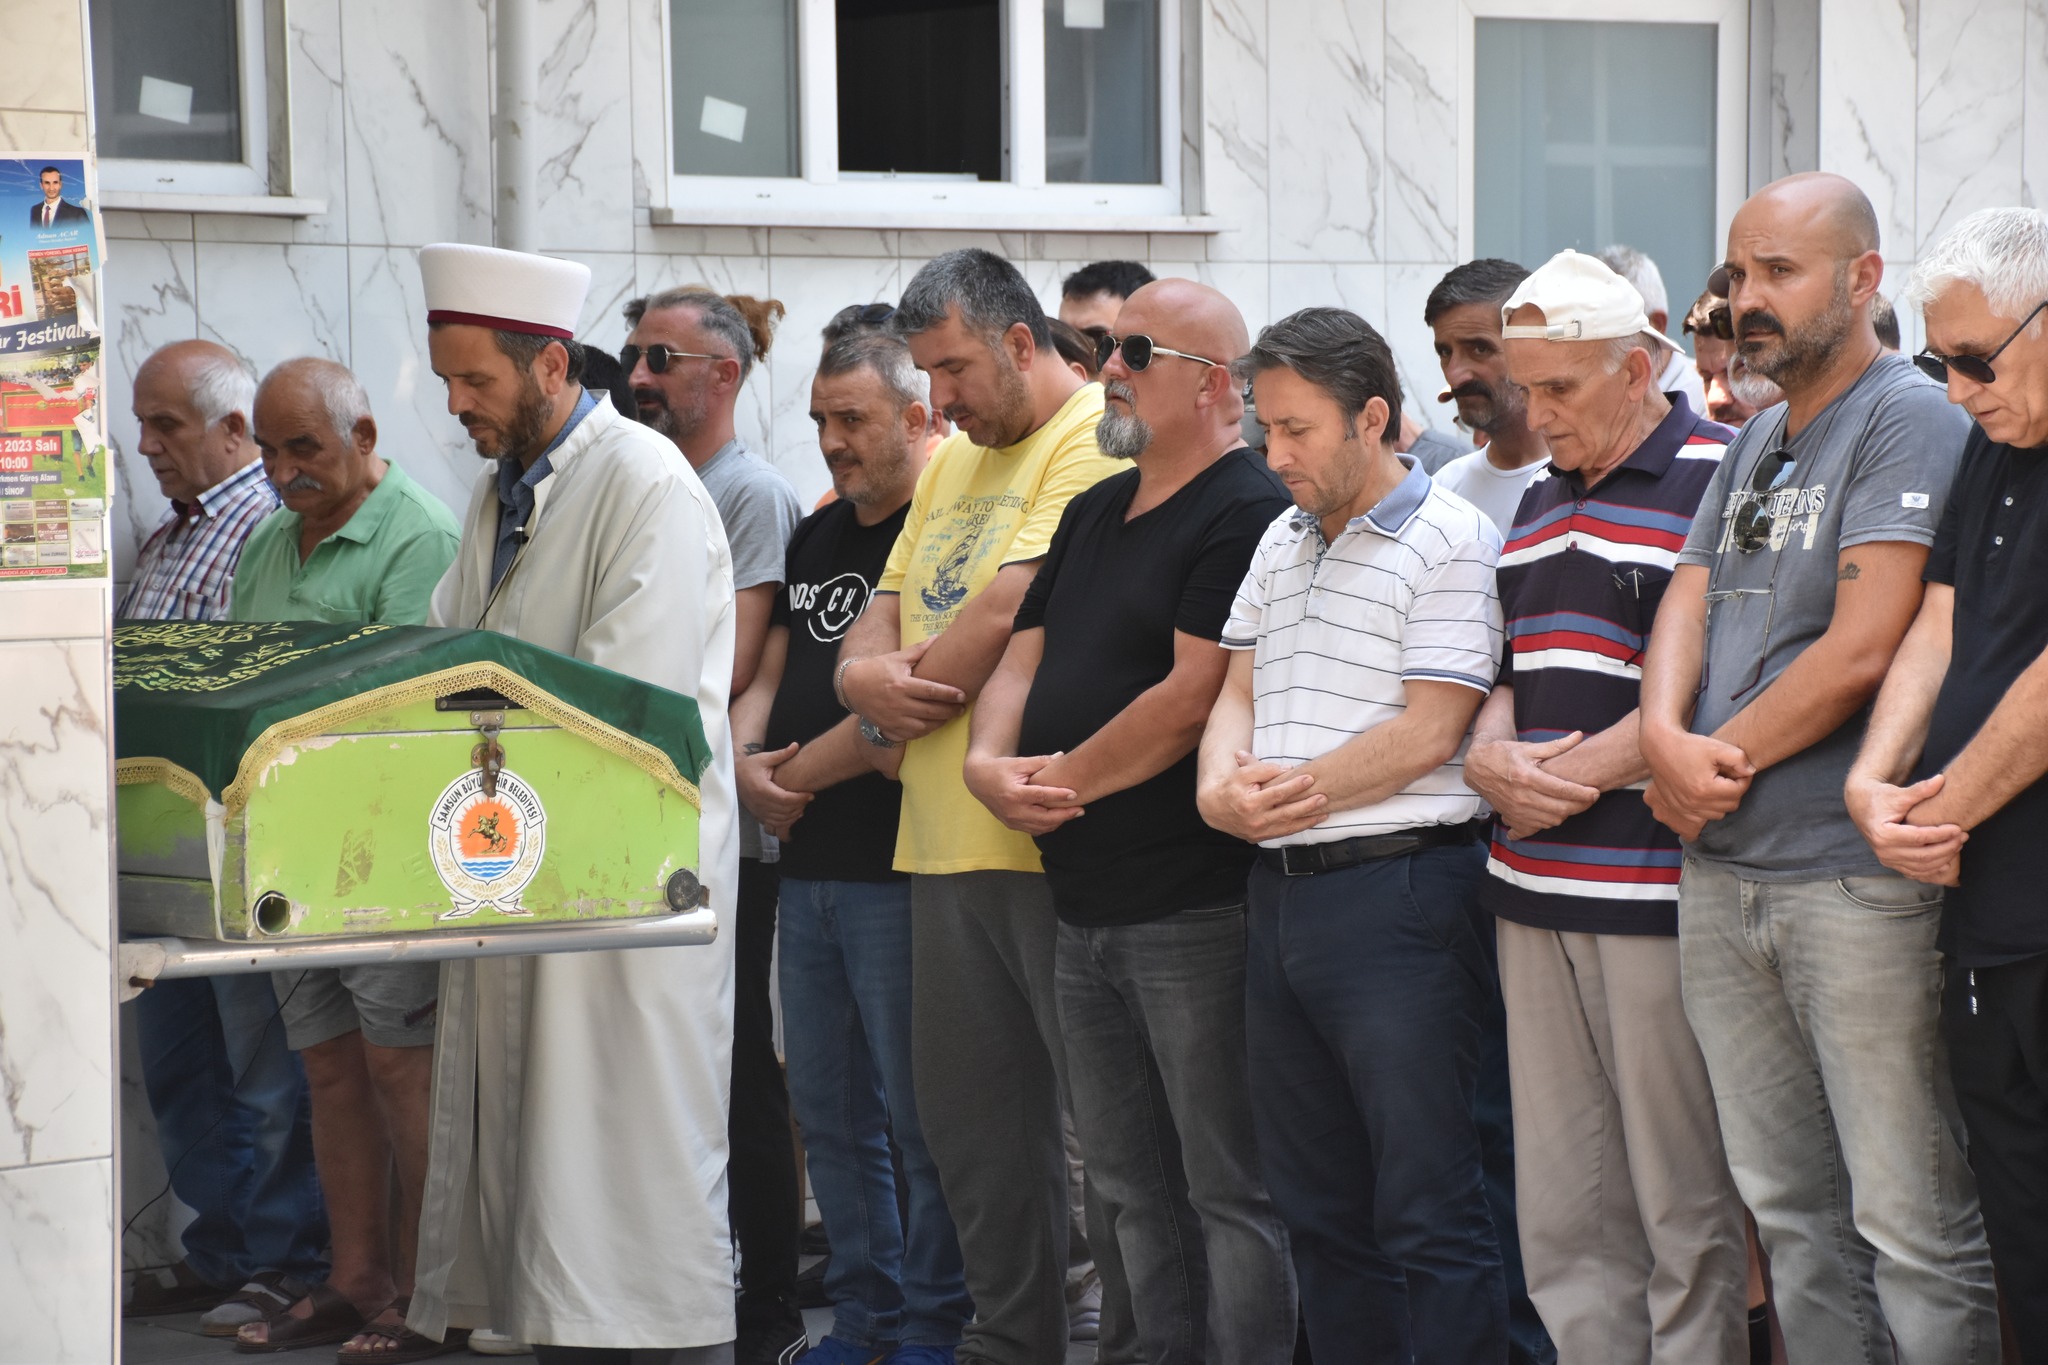 Belediye Başkanımız Hüseyin Kıyma ilçemiz halkından vefat eden Ahmet Çakıcı’nın cenaze namazına katıldı, ailesine başsağlığında bulundu.